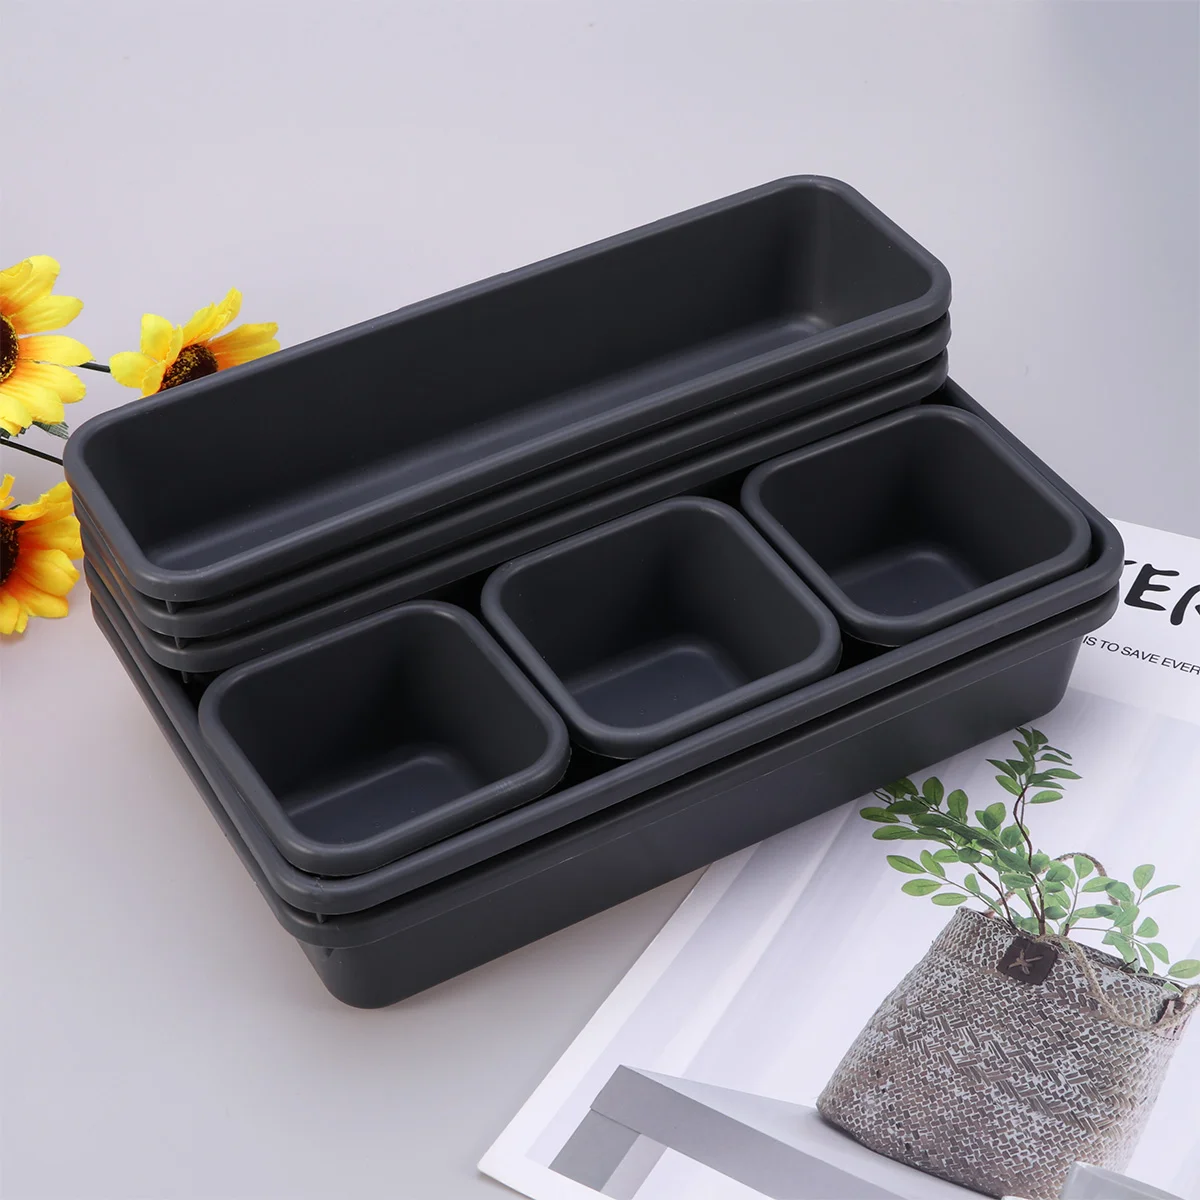 

8 в 1 Настольный ящик для хранения, ящик для организации пространства, пластиковый ящик для хранения, посуда, предметы домашнего обихода (черный)